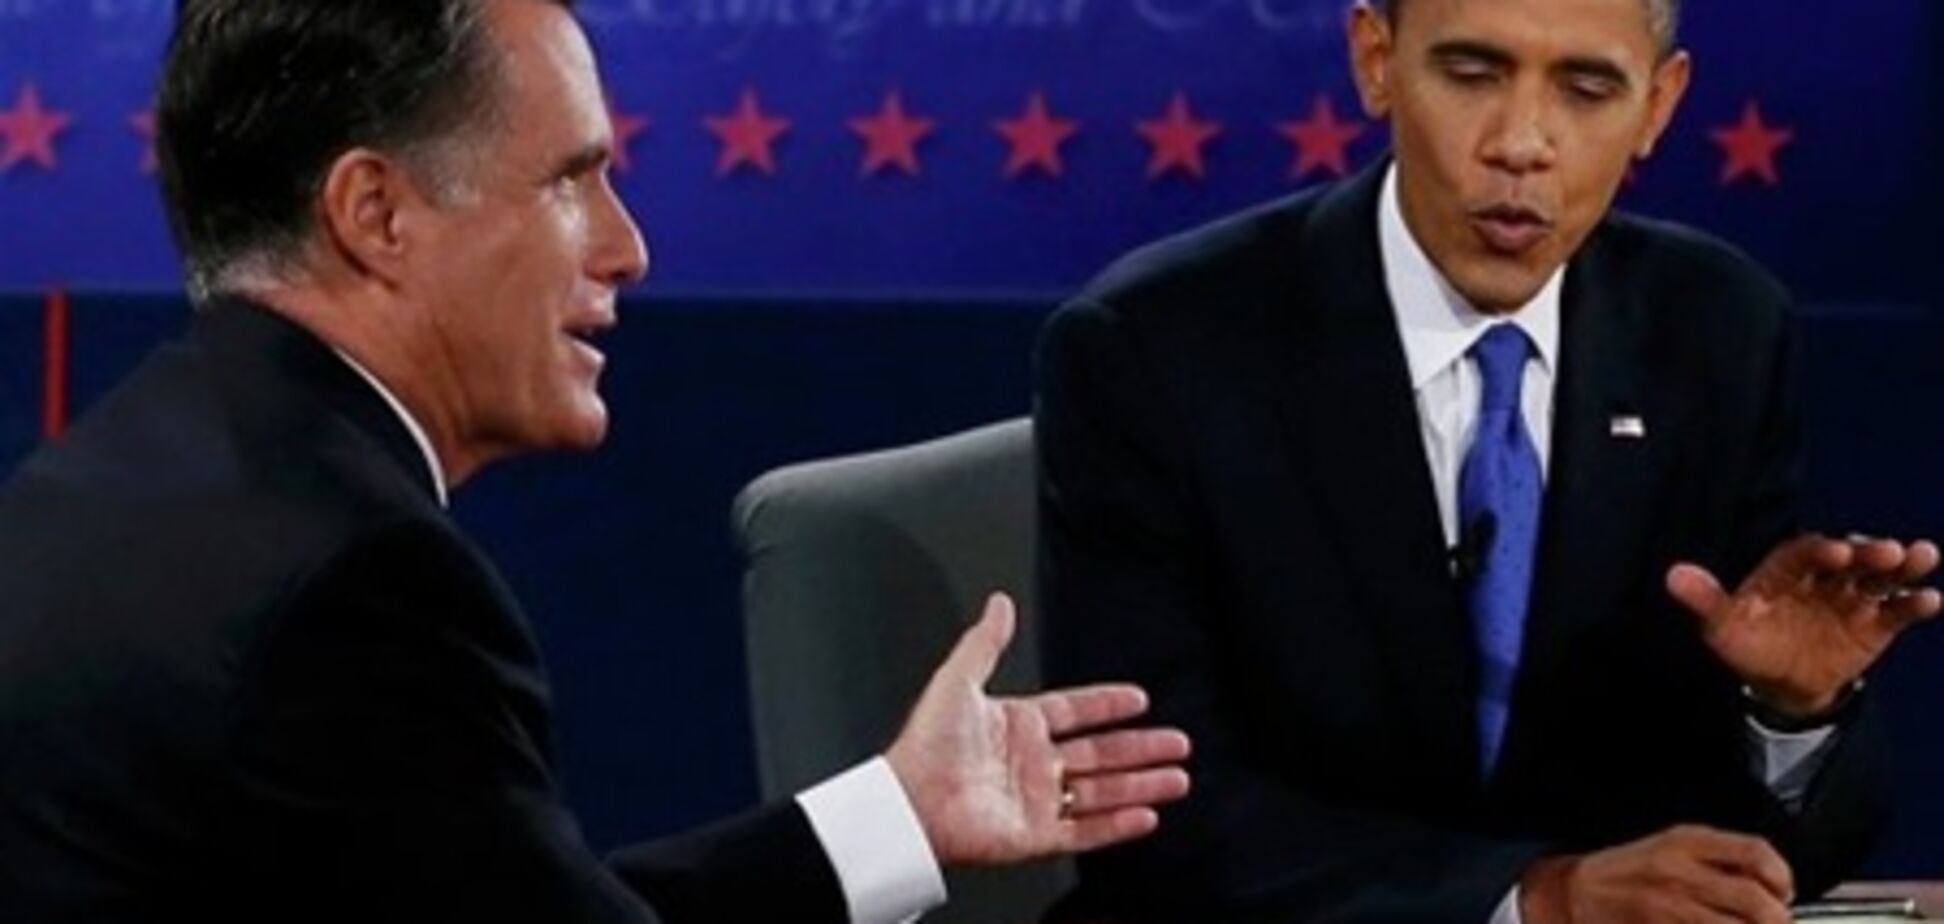 Ромни согласился с Обамой, признав недопустимость интервенции в Сирию